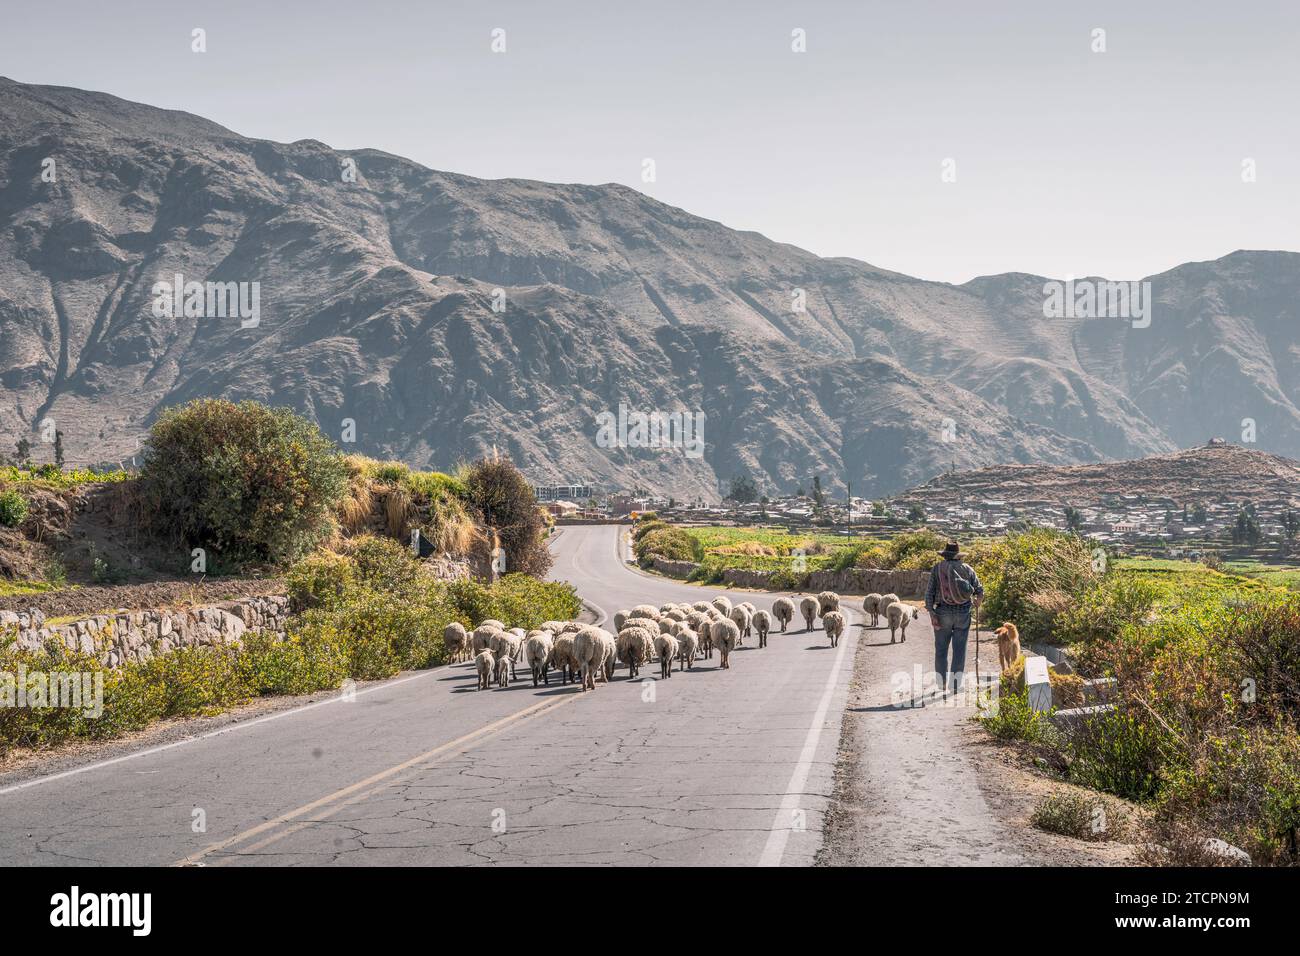 Le berger suit le troupeau de moutons par la route de montagne au Pérou Banque D'Images